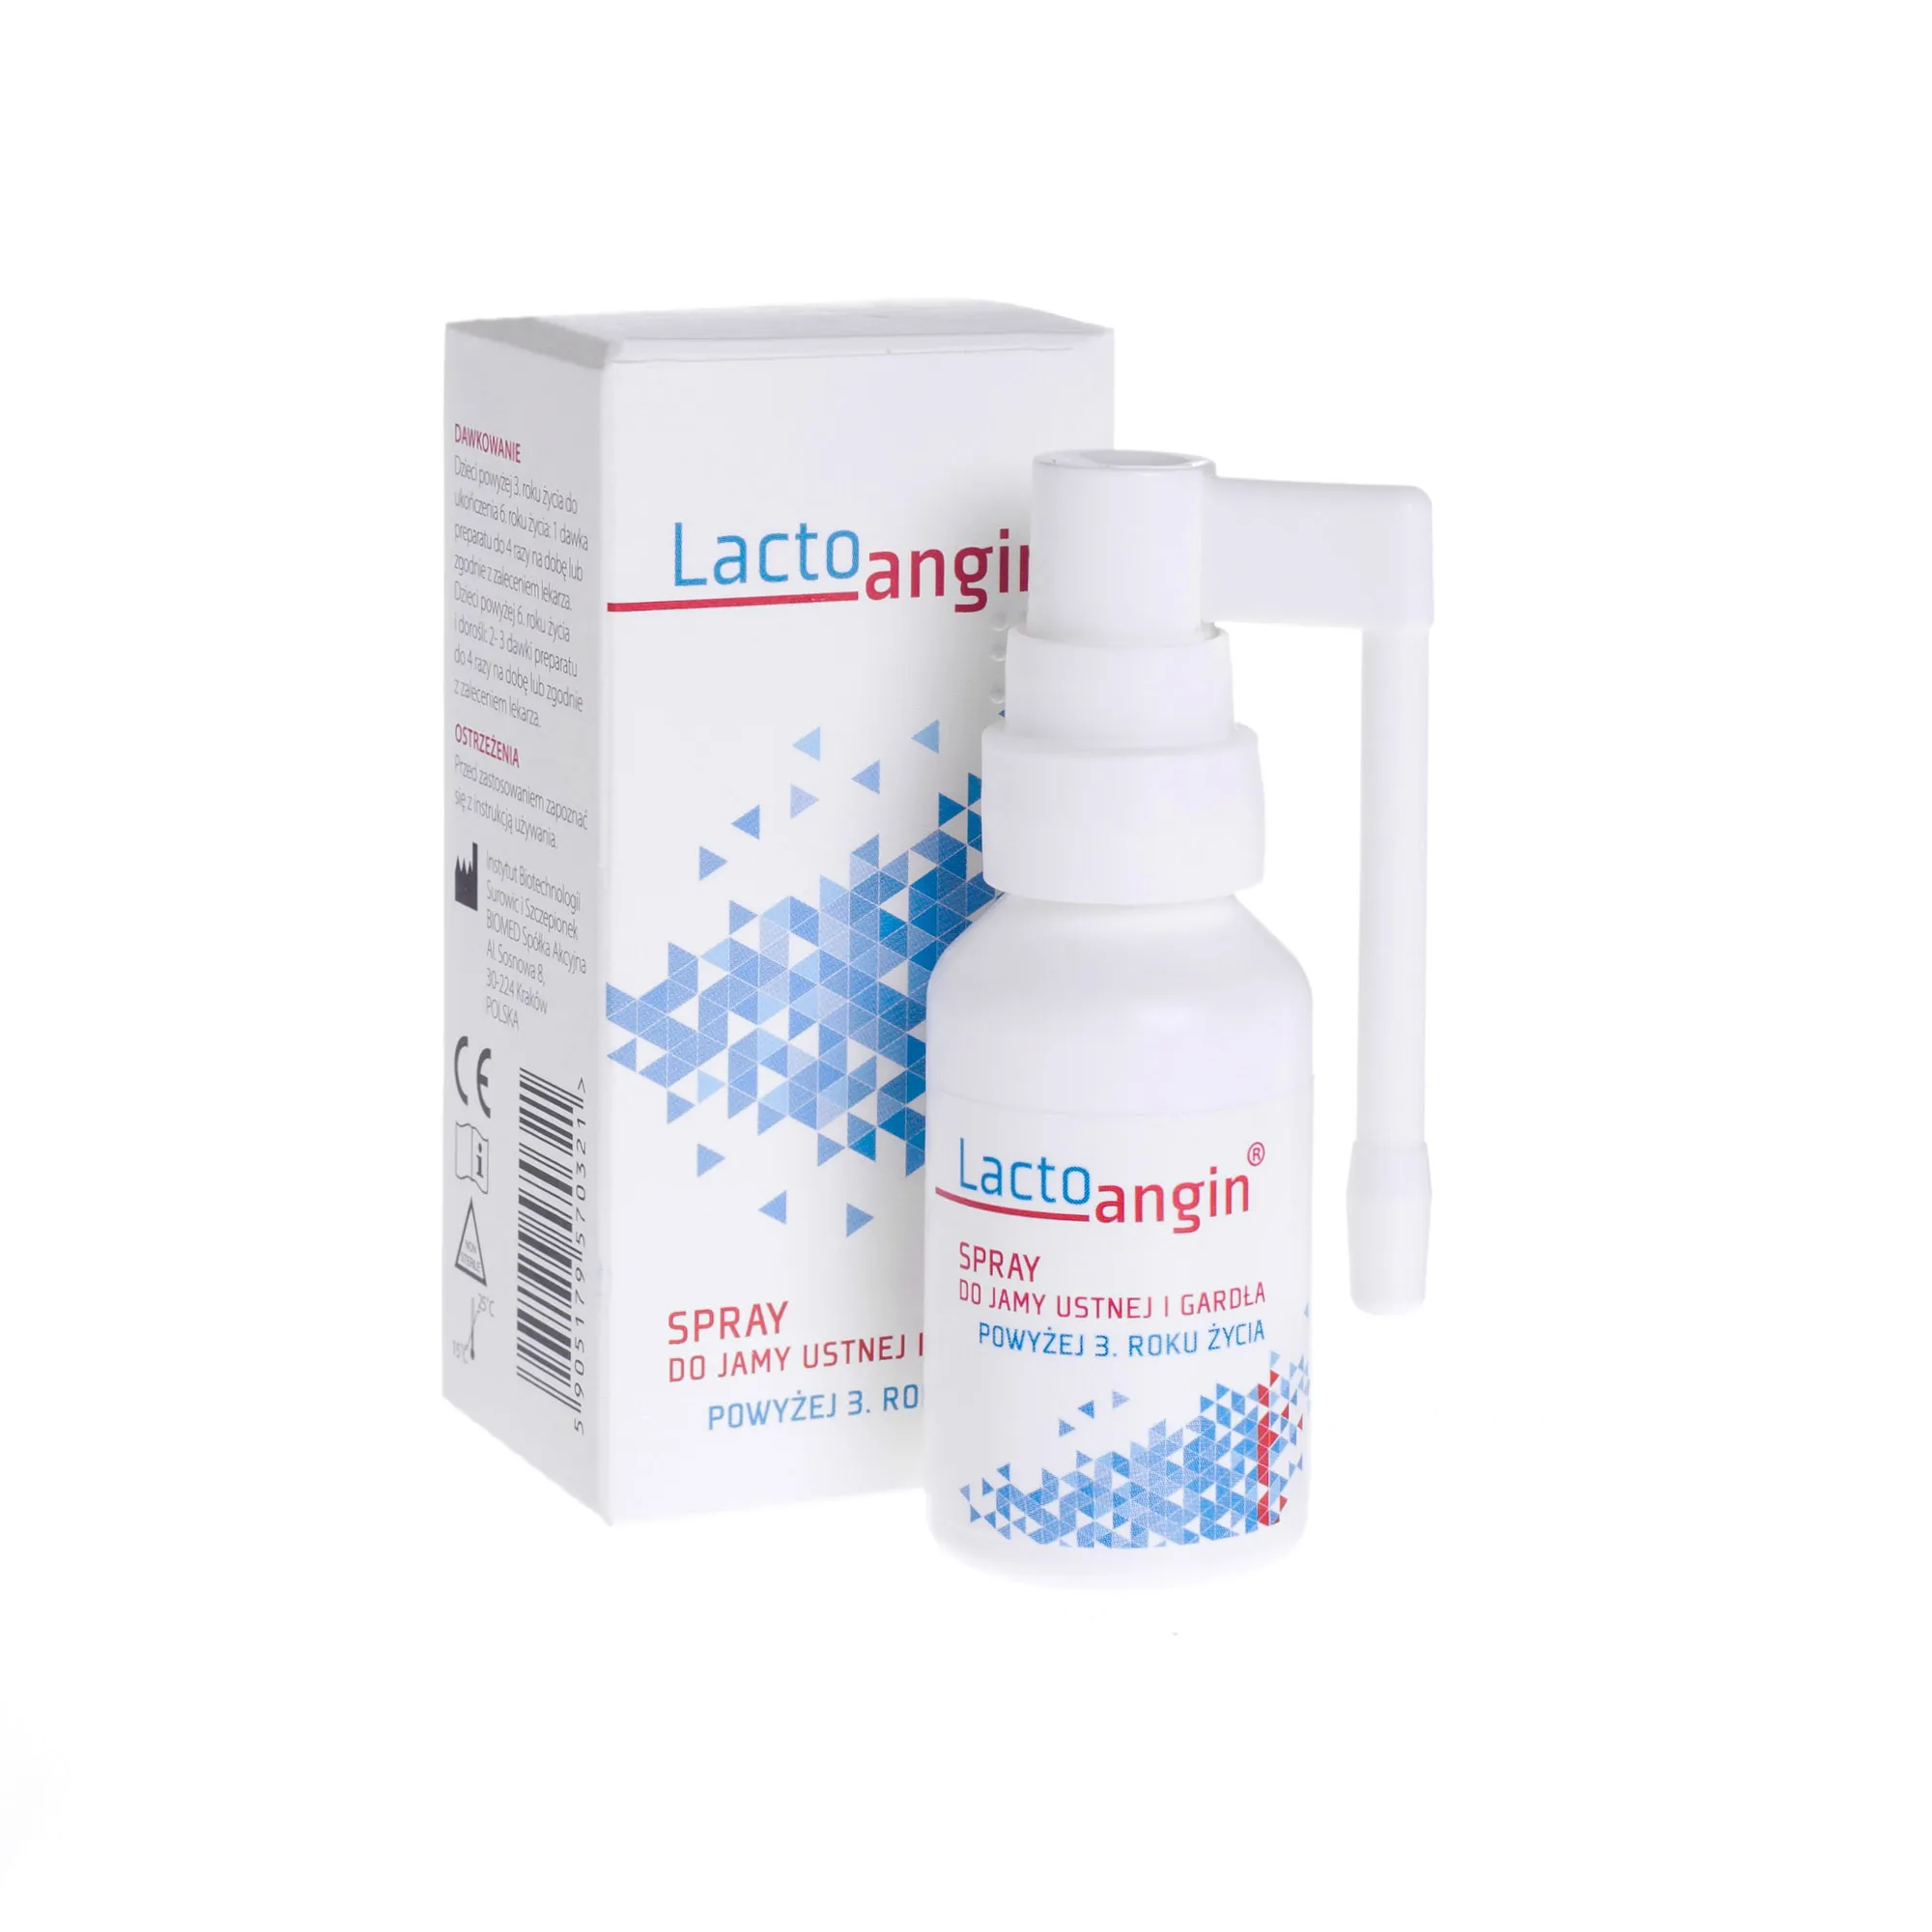 Lactoangin - spray do jamy ustnej i gardła, 30 g